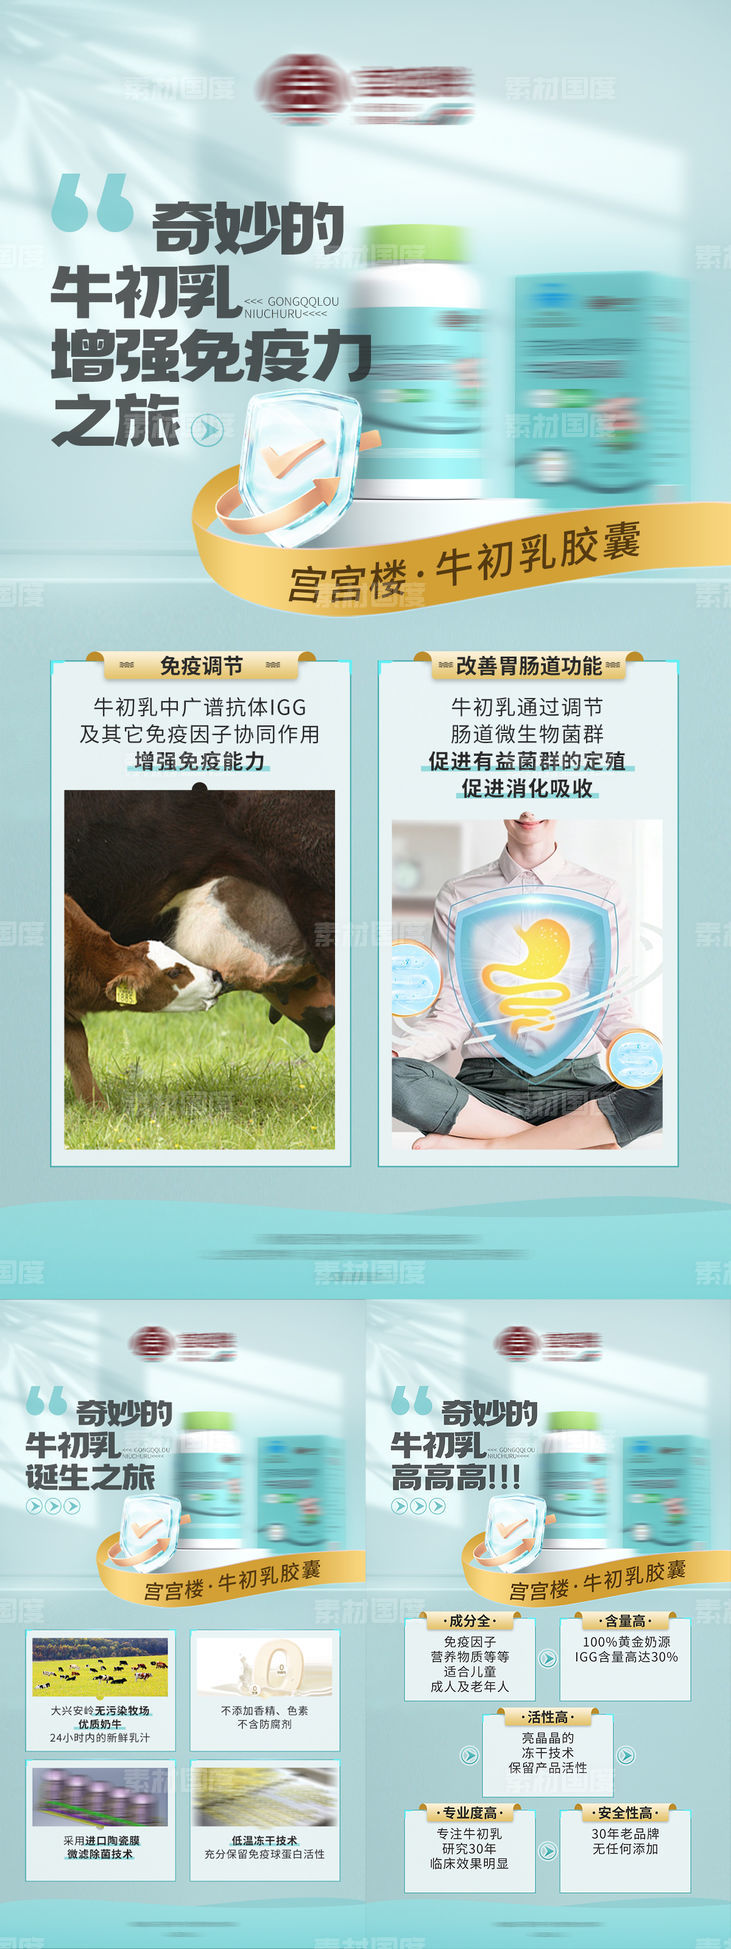 牛初乳保健品养生产品介绍海报